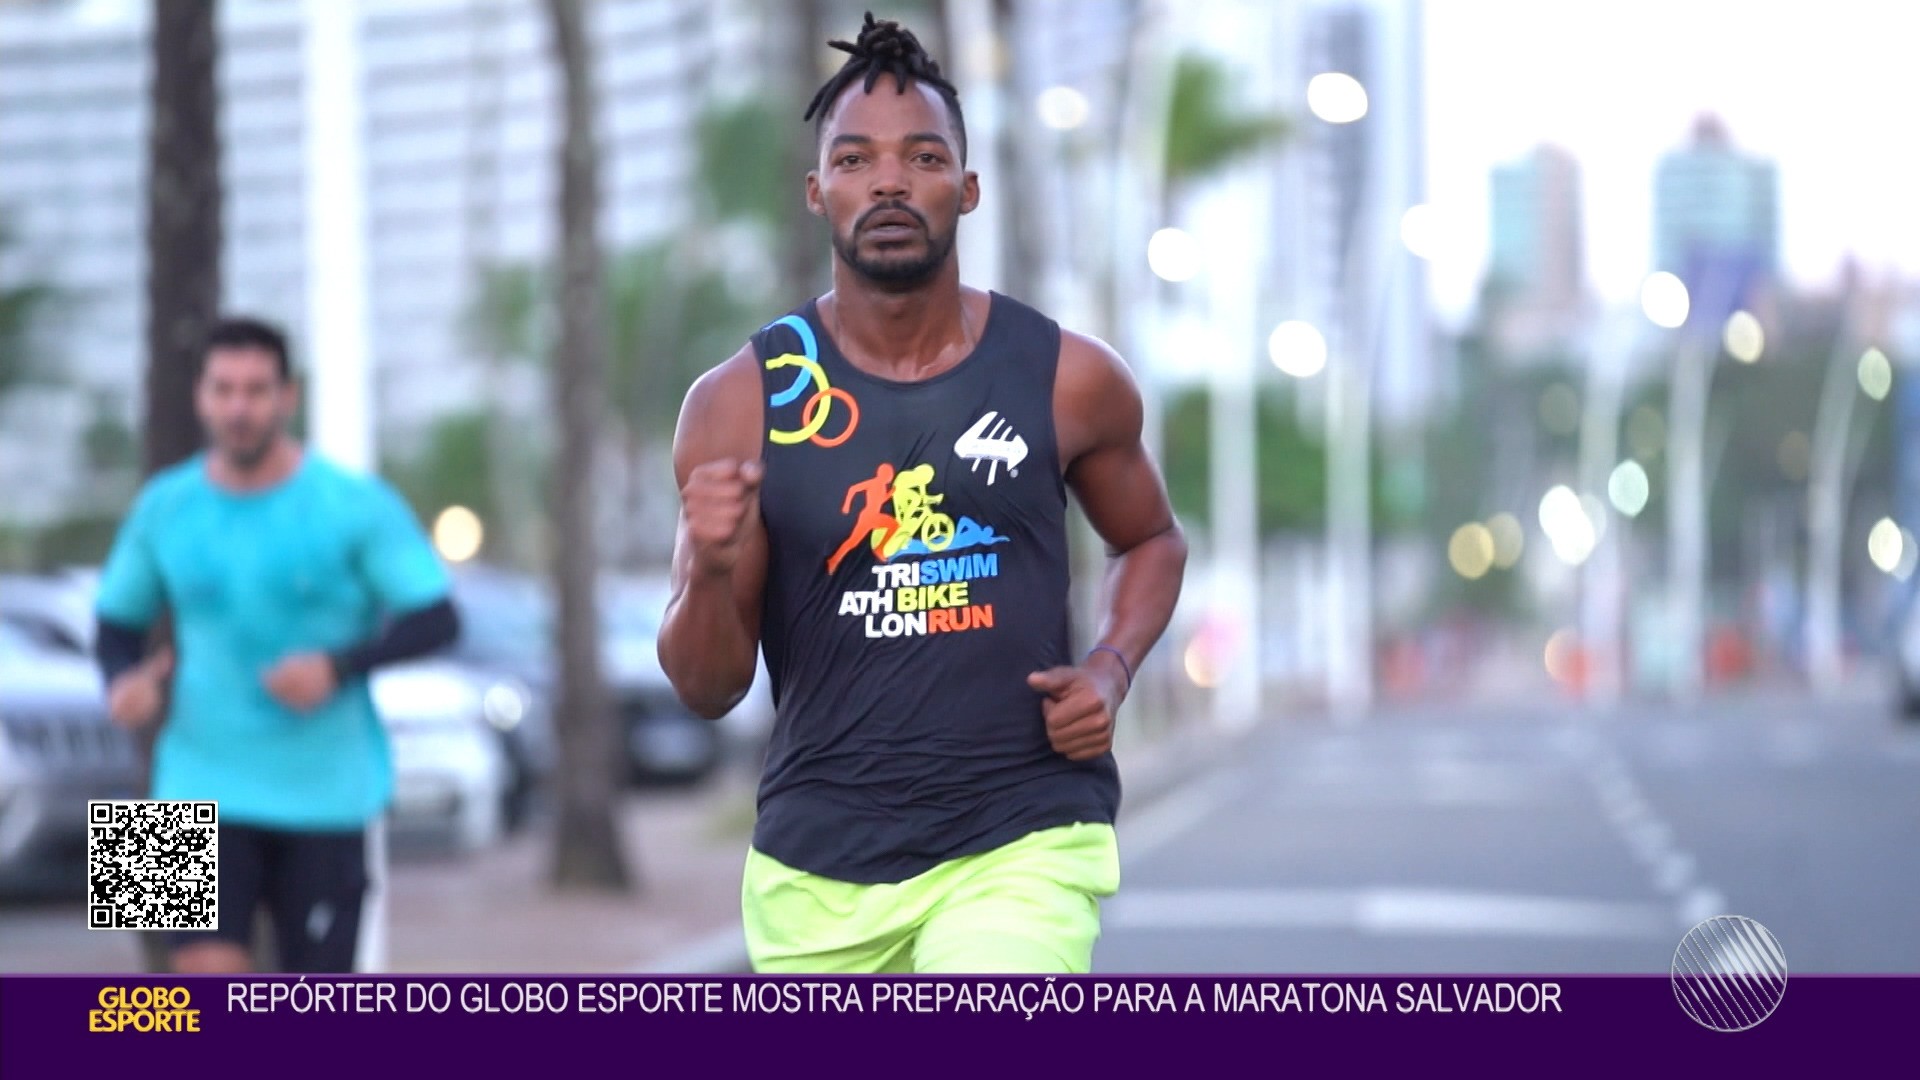 Maratona Mongo e Drongo 2019 - 2 horas de vídeos de 2019